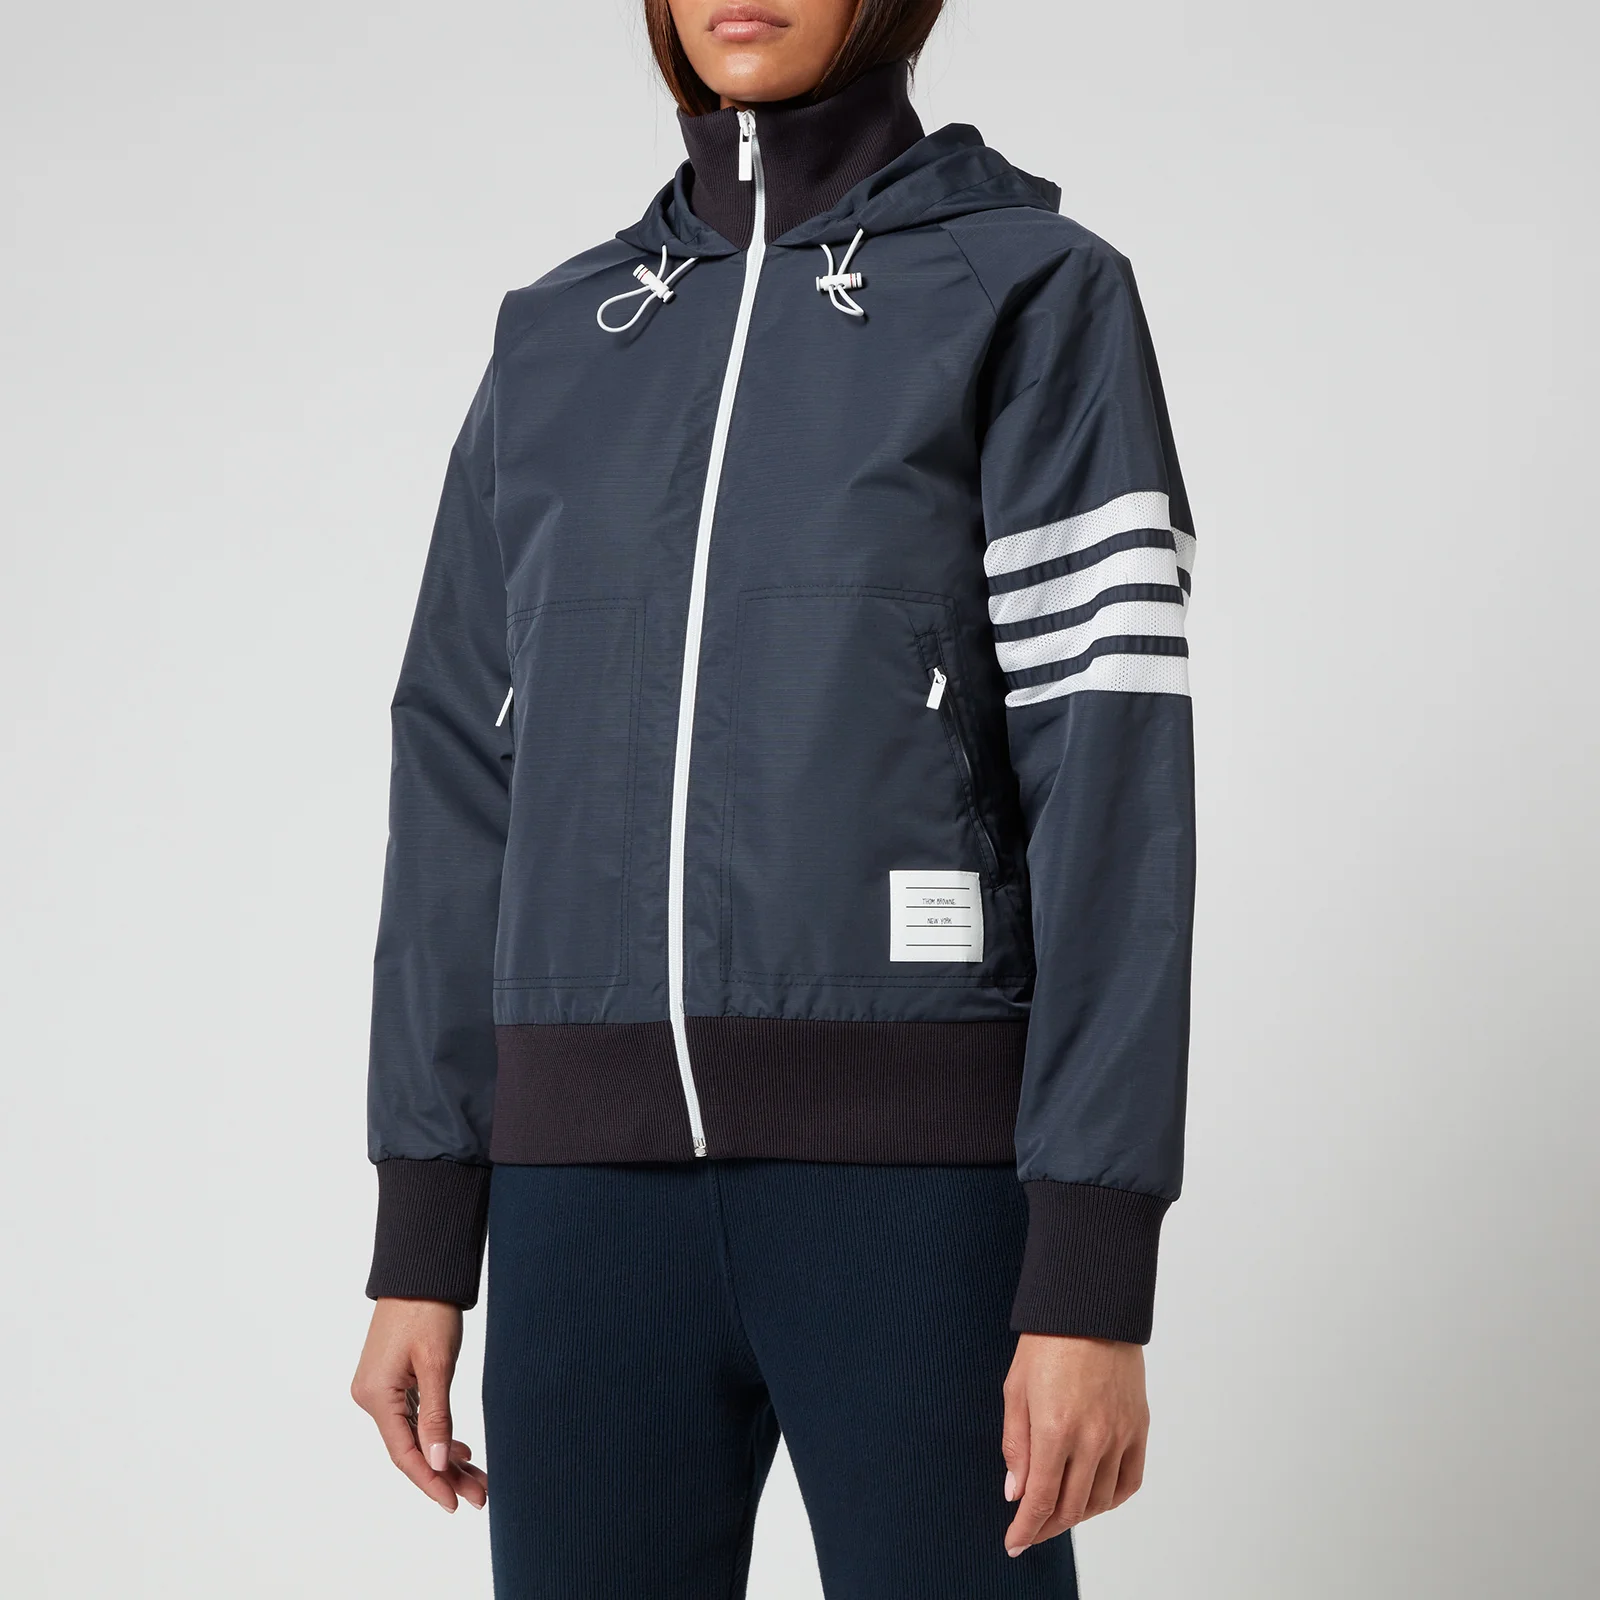 Thom Browne Women's Full Zip Hooded Varsity Jacket - Navy Image 1